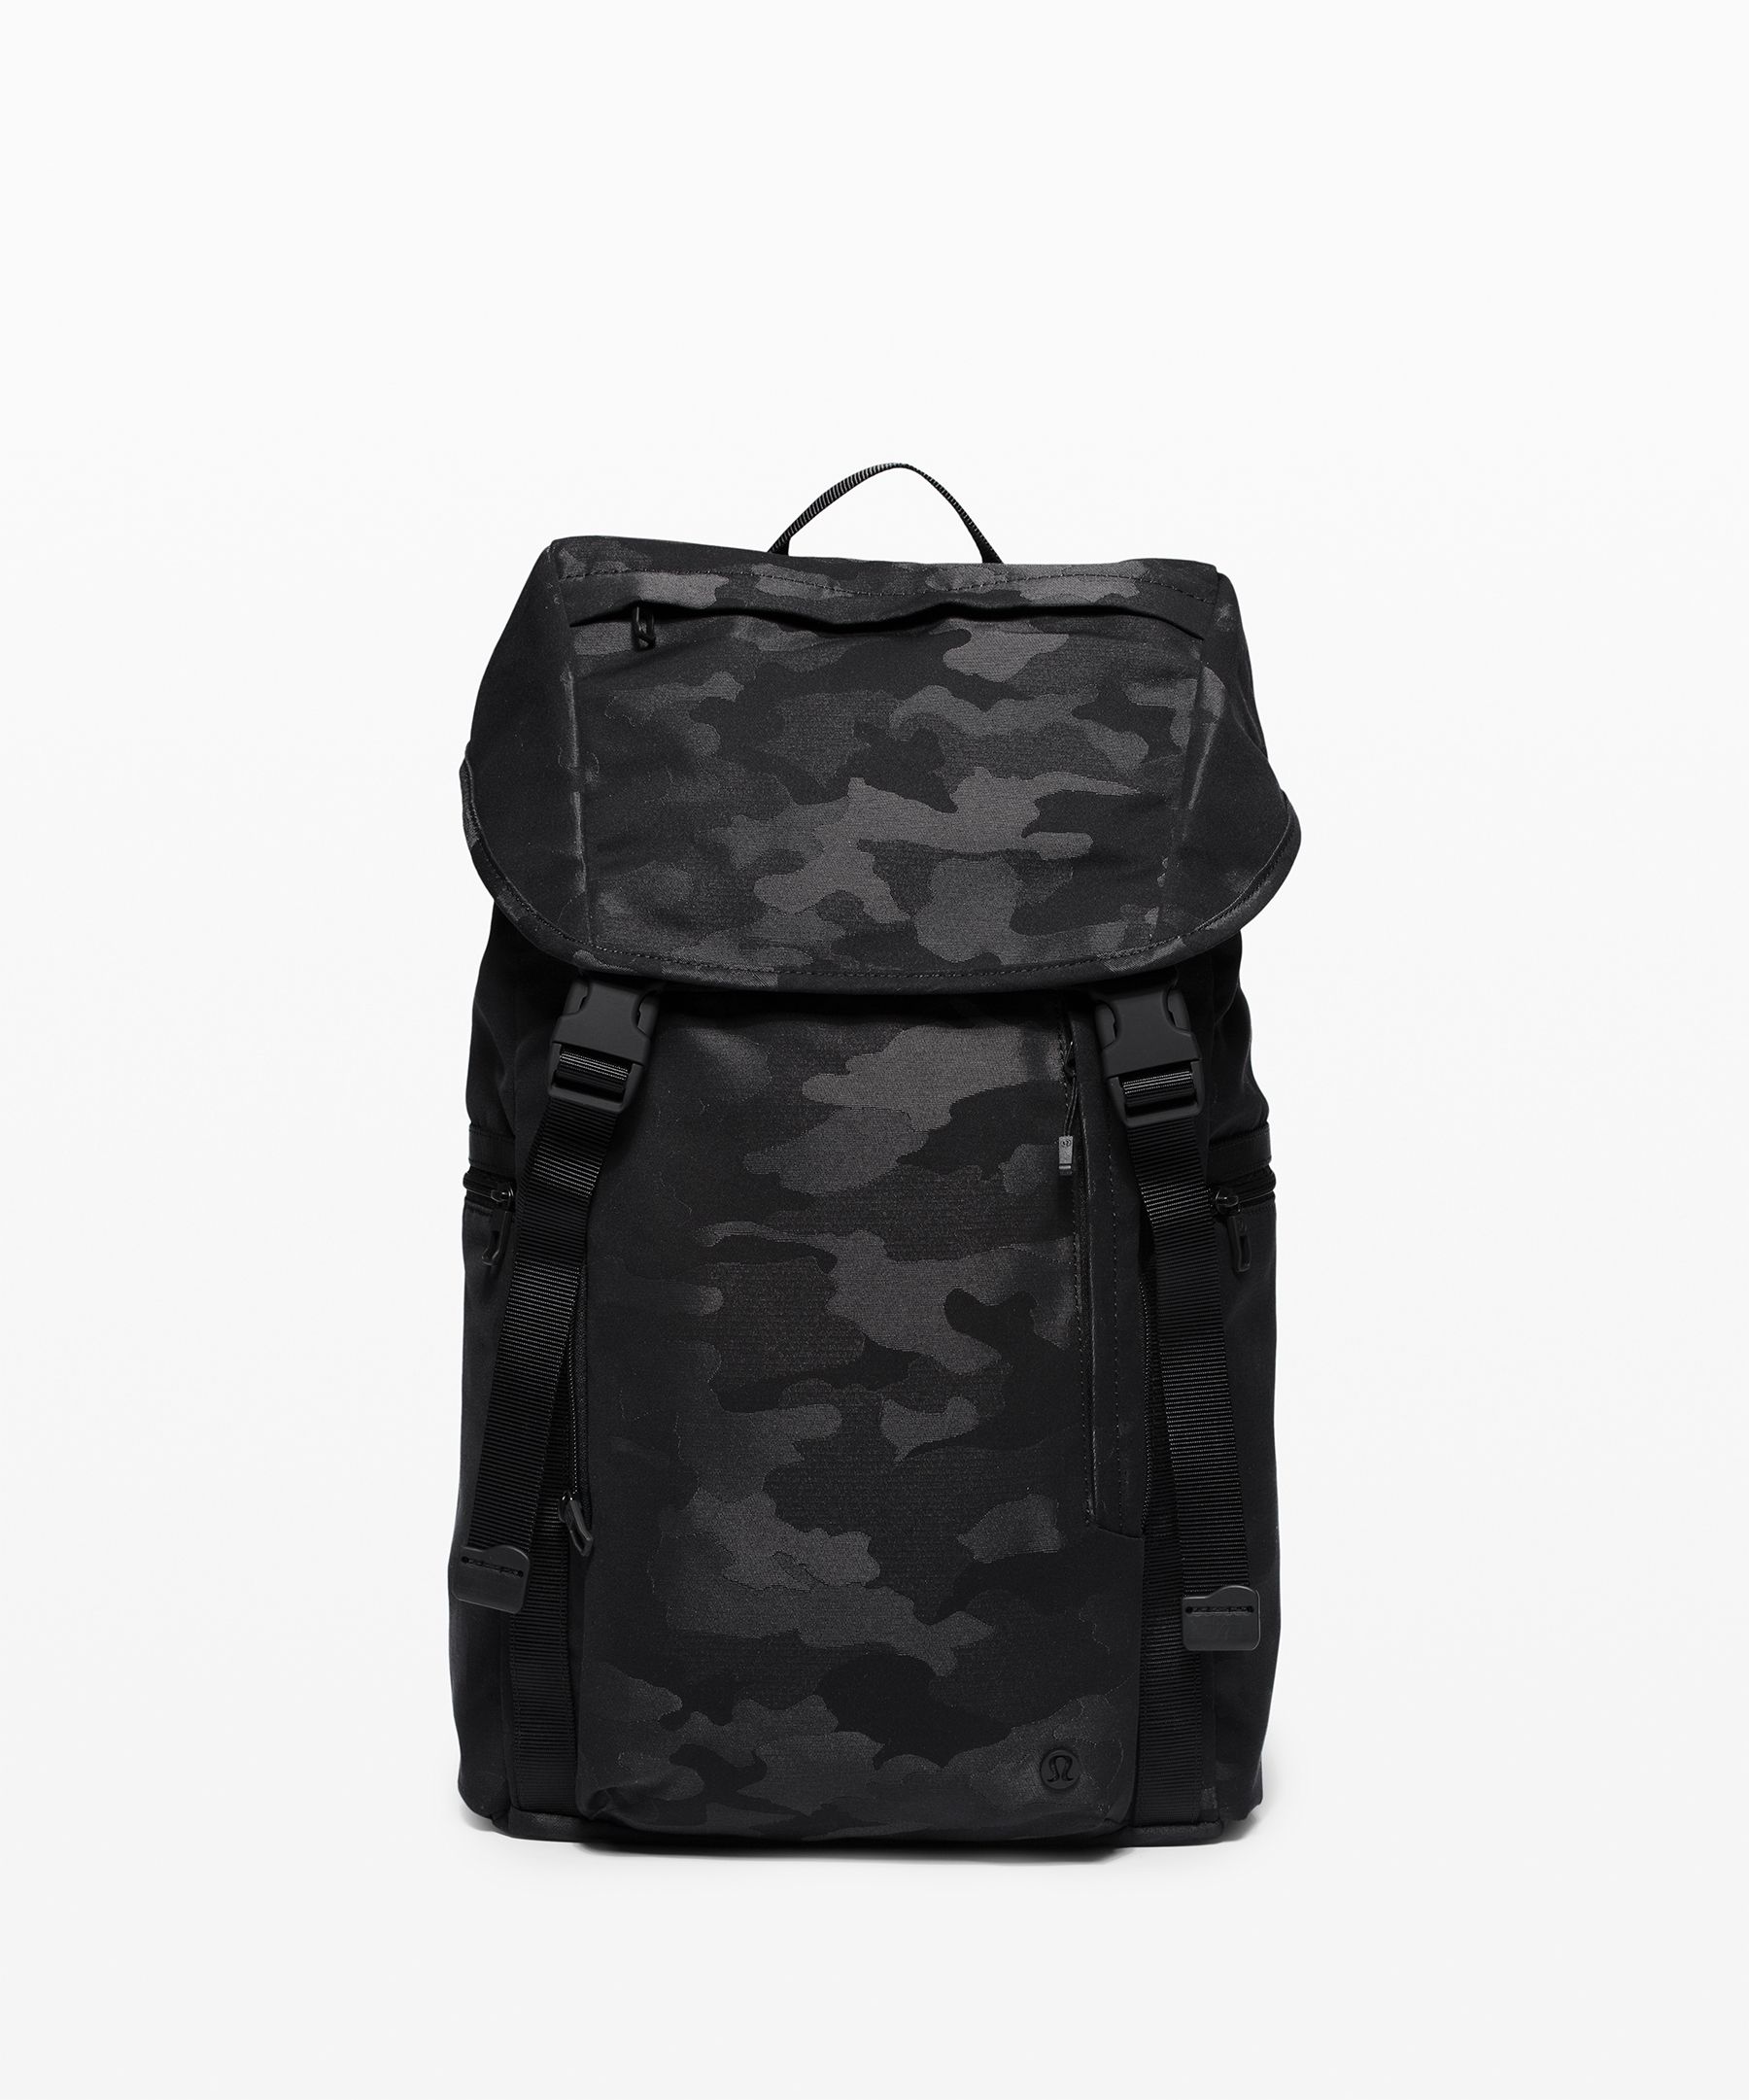 lululemon camo backpack